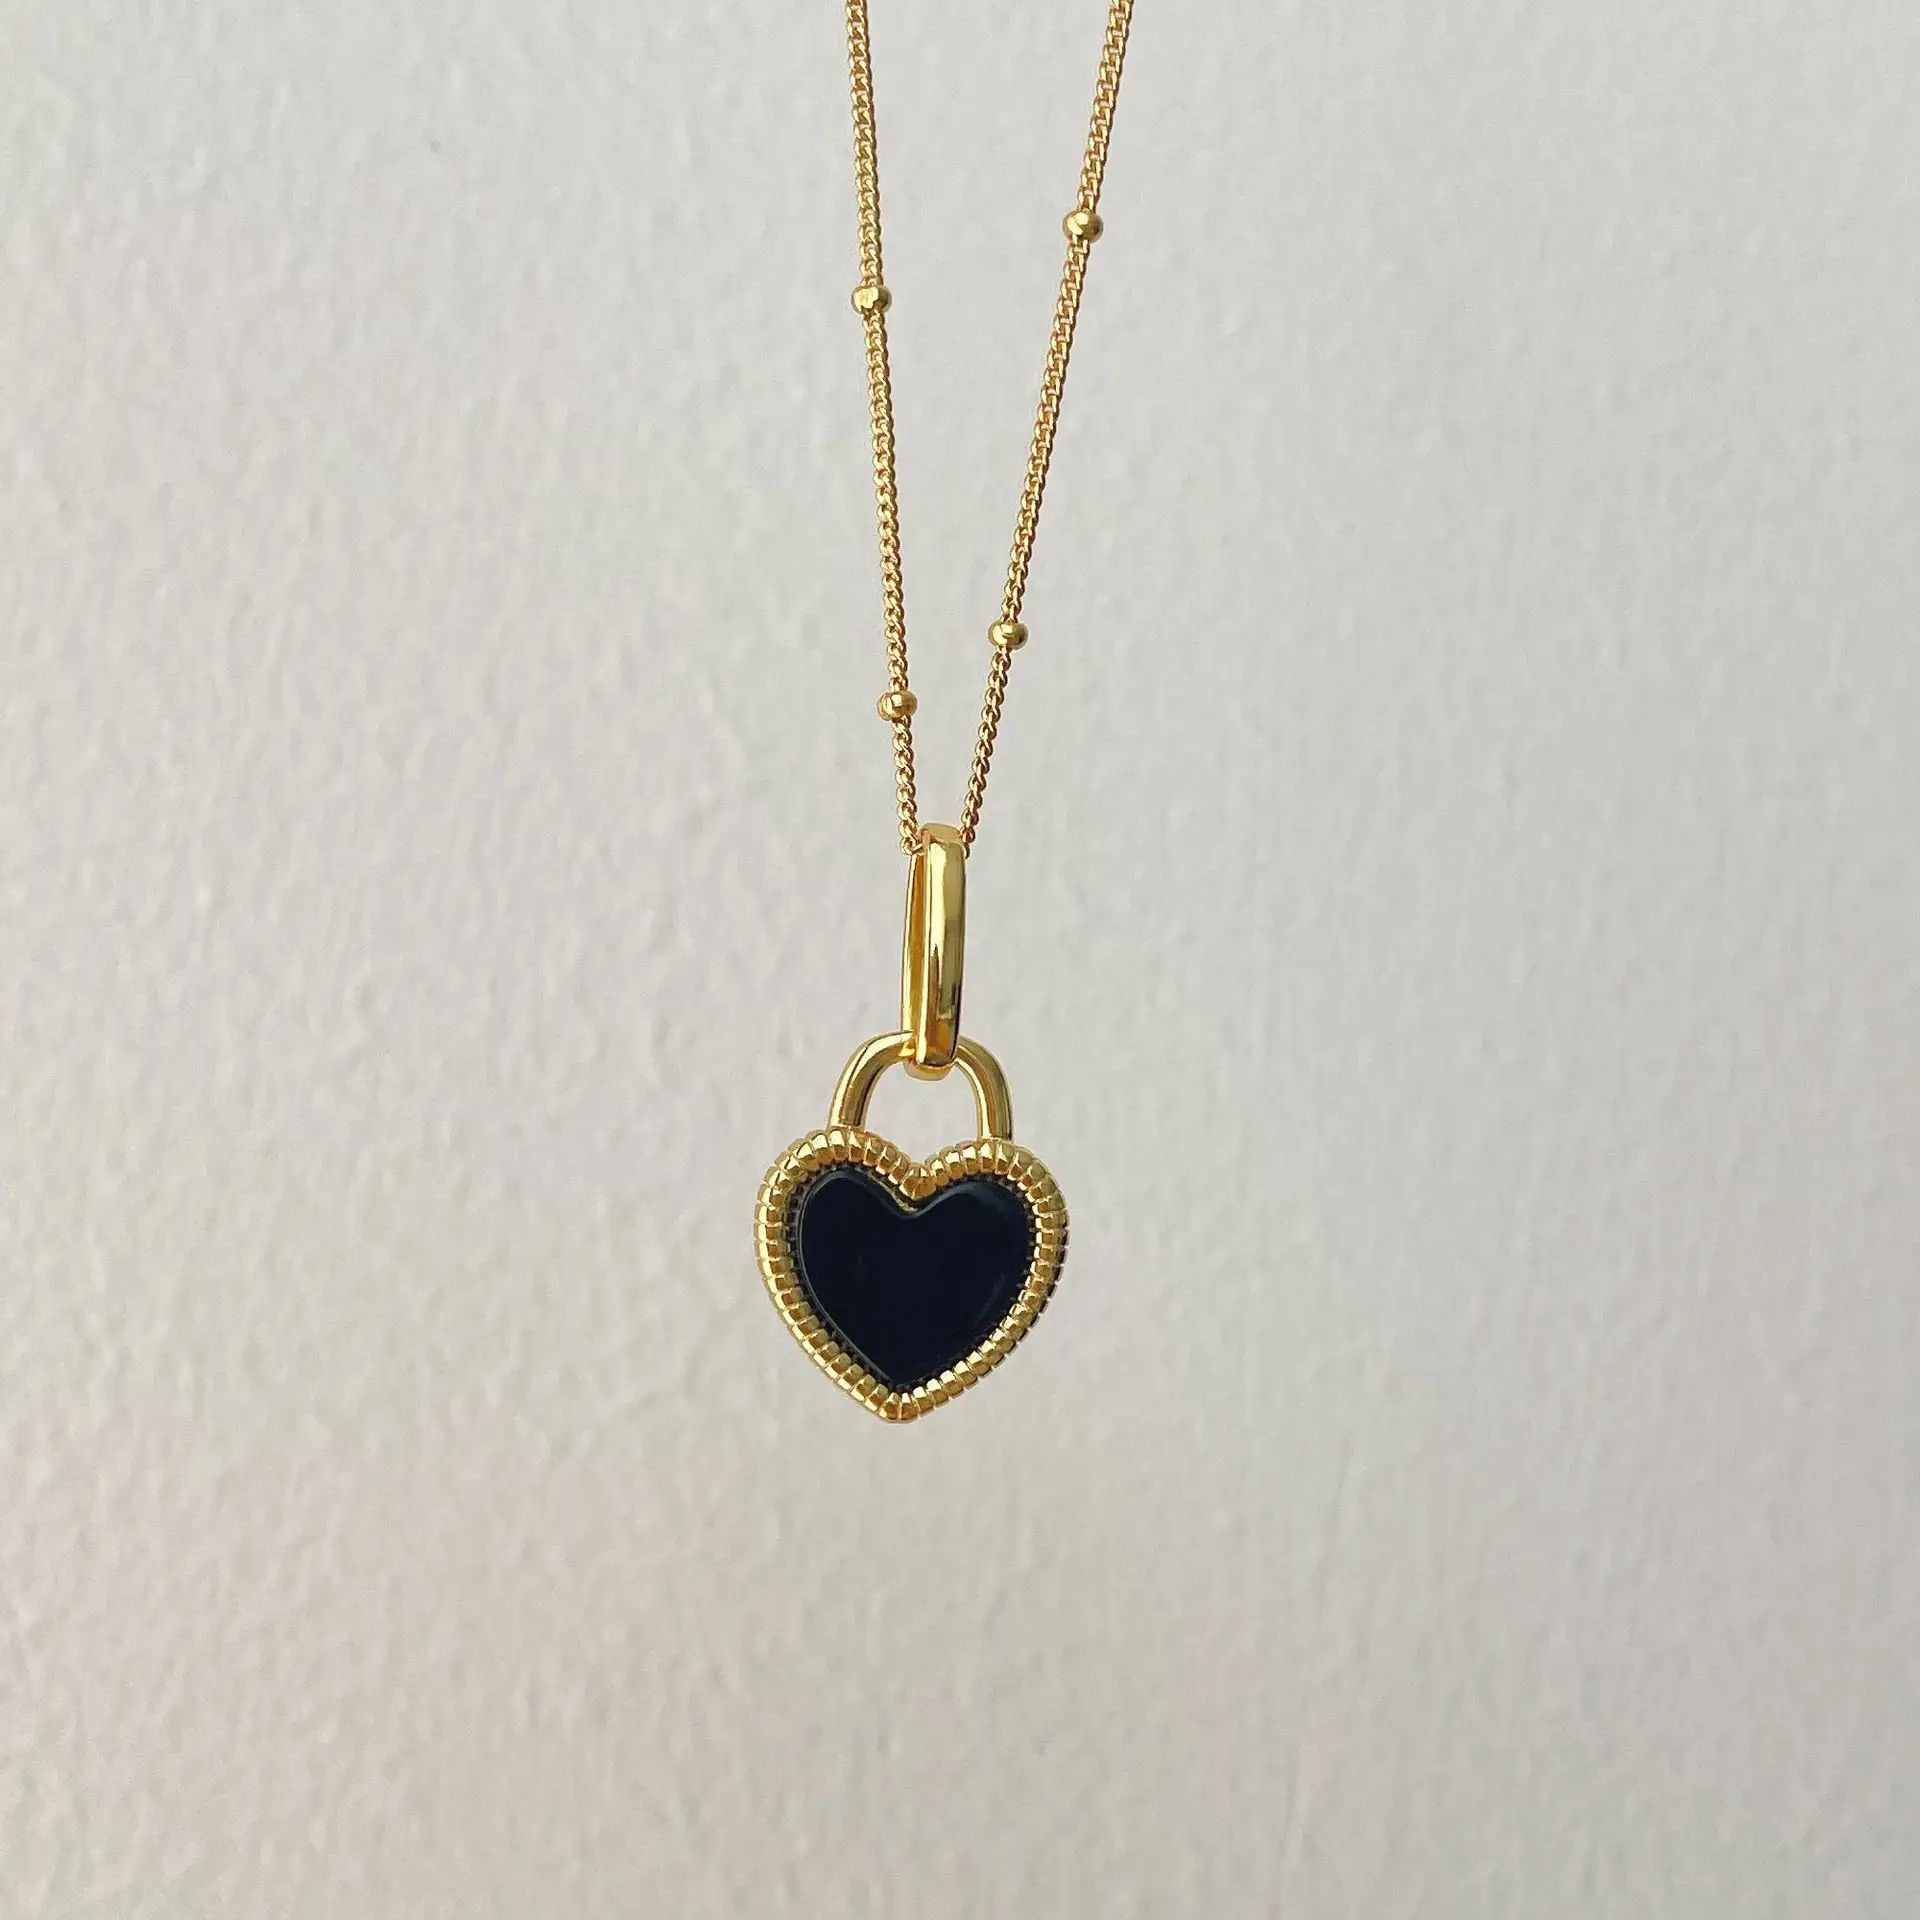 Italienisch schwarz und weiß Liebe eingraviert Halskette 925 Sterling-Silber-Pendants schwarz Achat Herz-Halsband